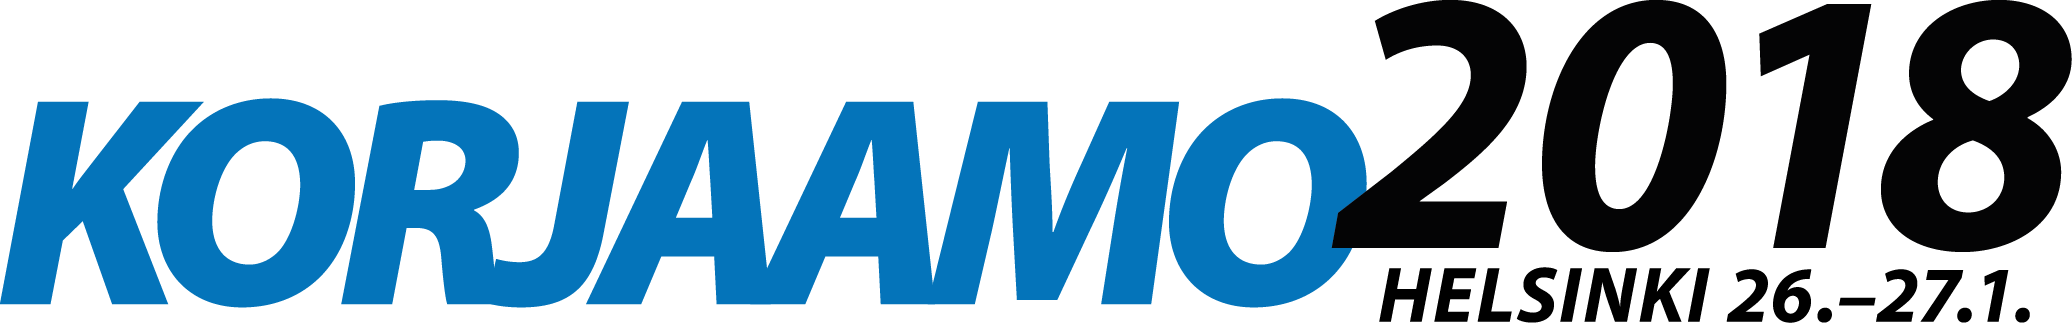 Korjaamo2018-logo.png